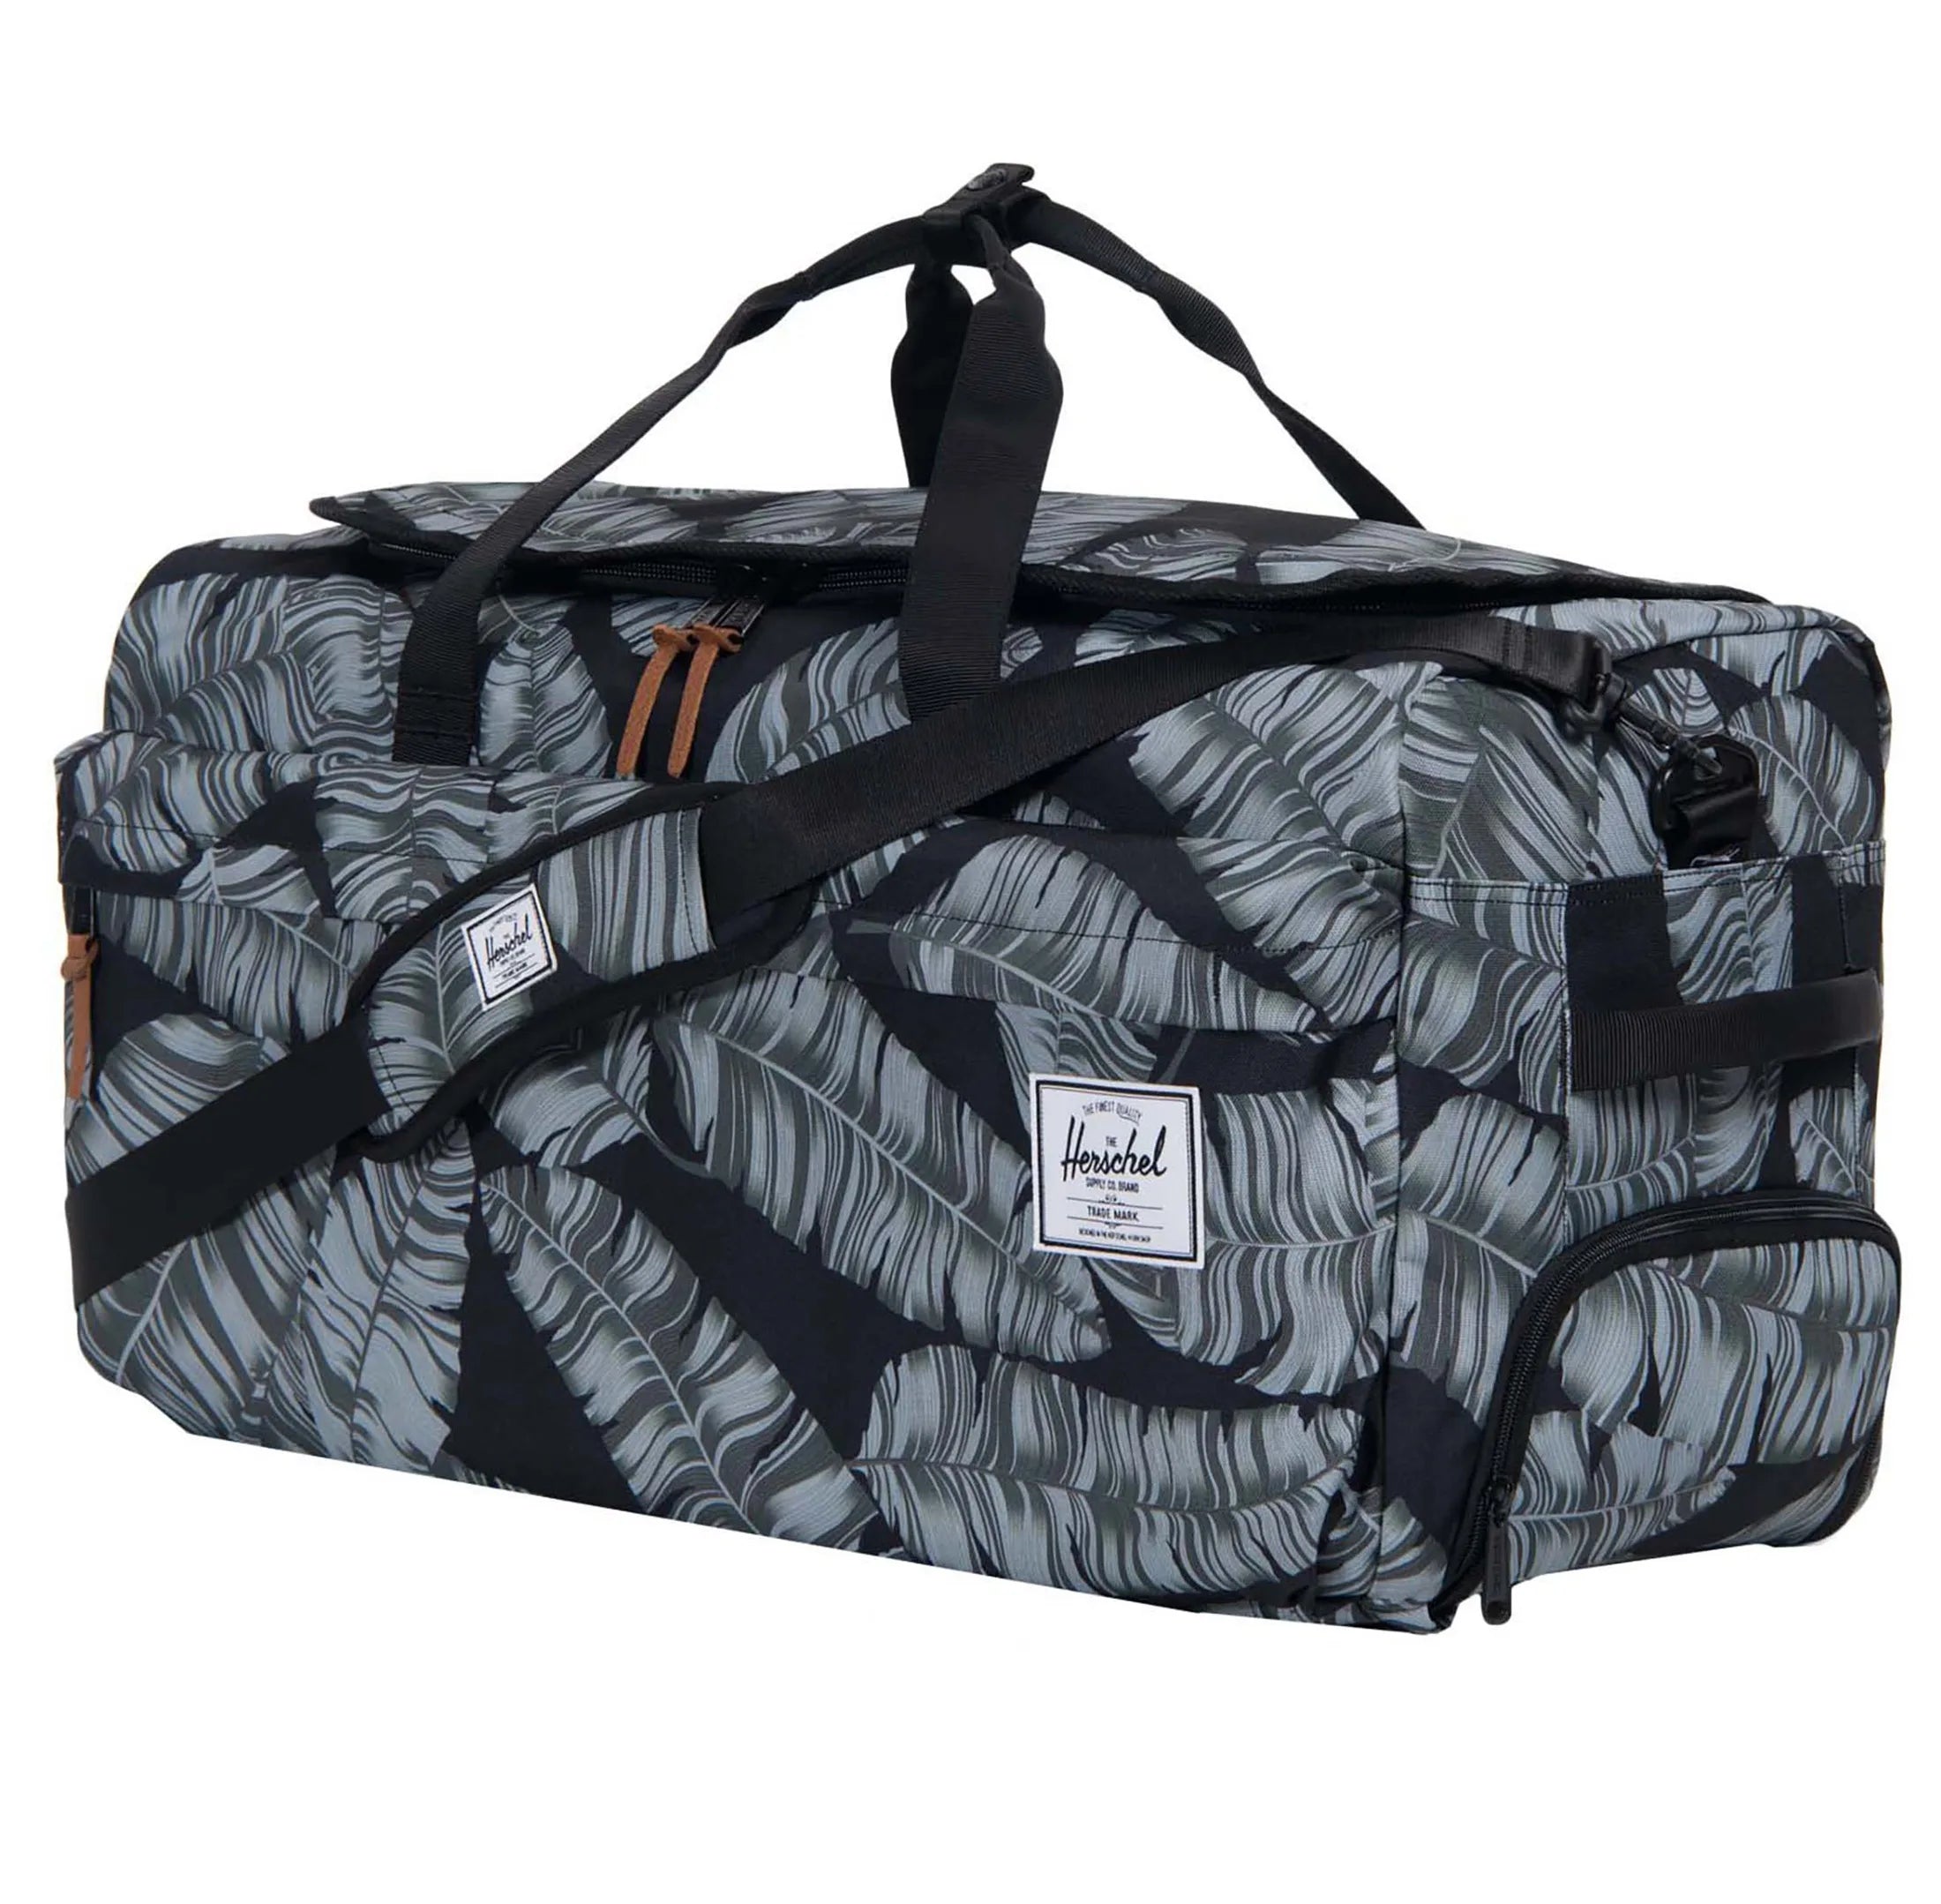 Herschel Travel Collection Outfitter Travel sac de voyage 61 cm - paume noire